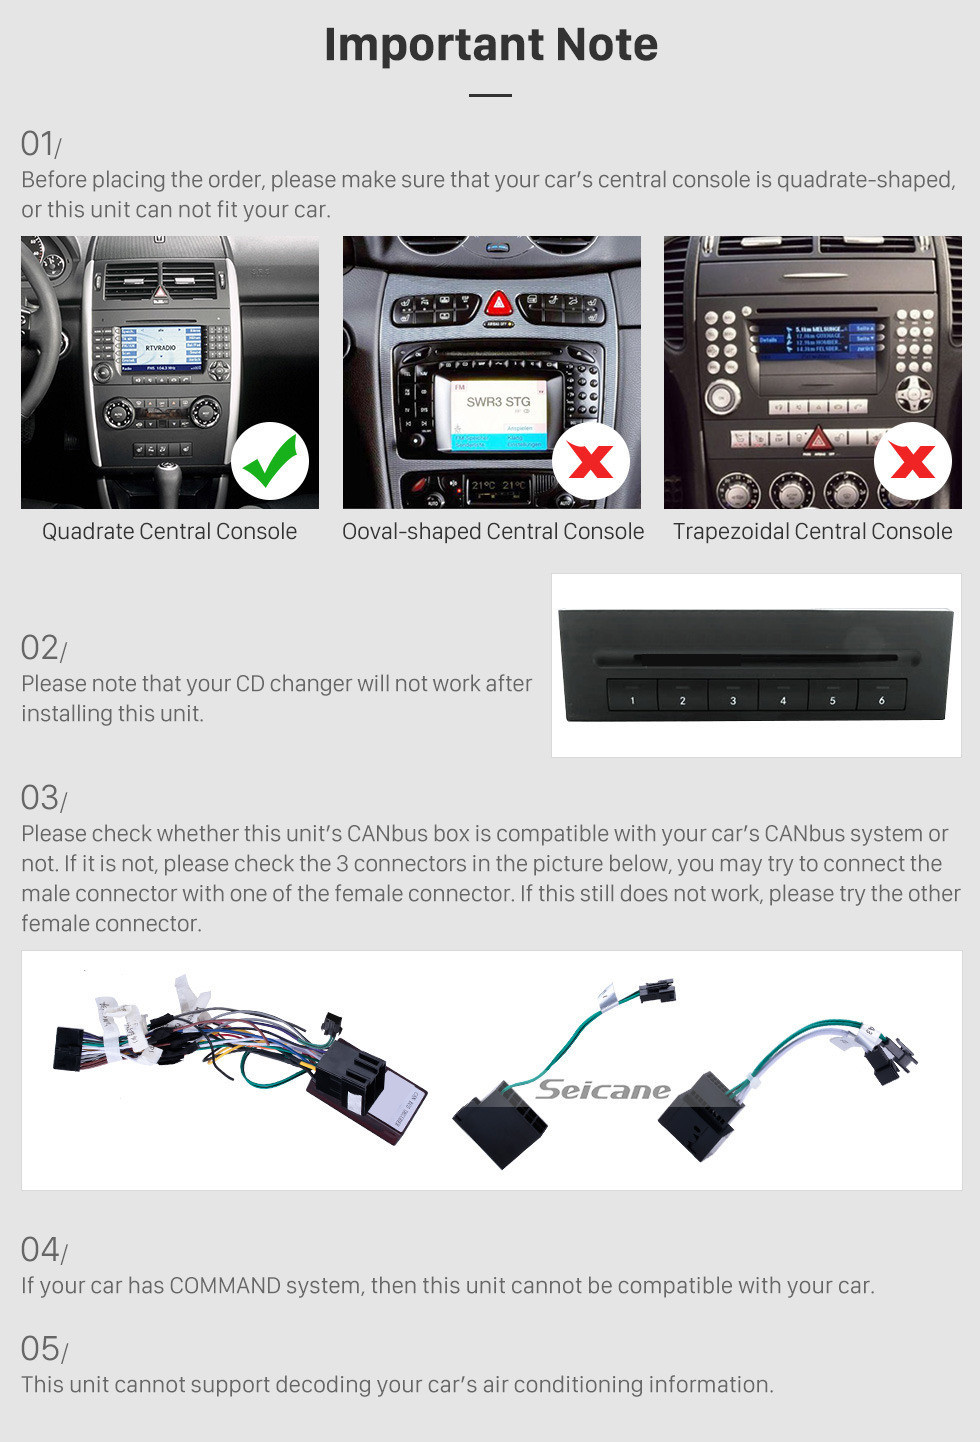 Seicane Android 12.0 Autoradio GPS Système A/V de voiture pour 2006-2012 Mercedes Benz Viano Vito avec écran tactile HD 1024*600 Lecteur CD DVD AUX 3G WiFi Bluetooth OBD2 Lien miroir Caméra de recul Commande au volant